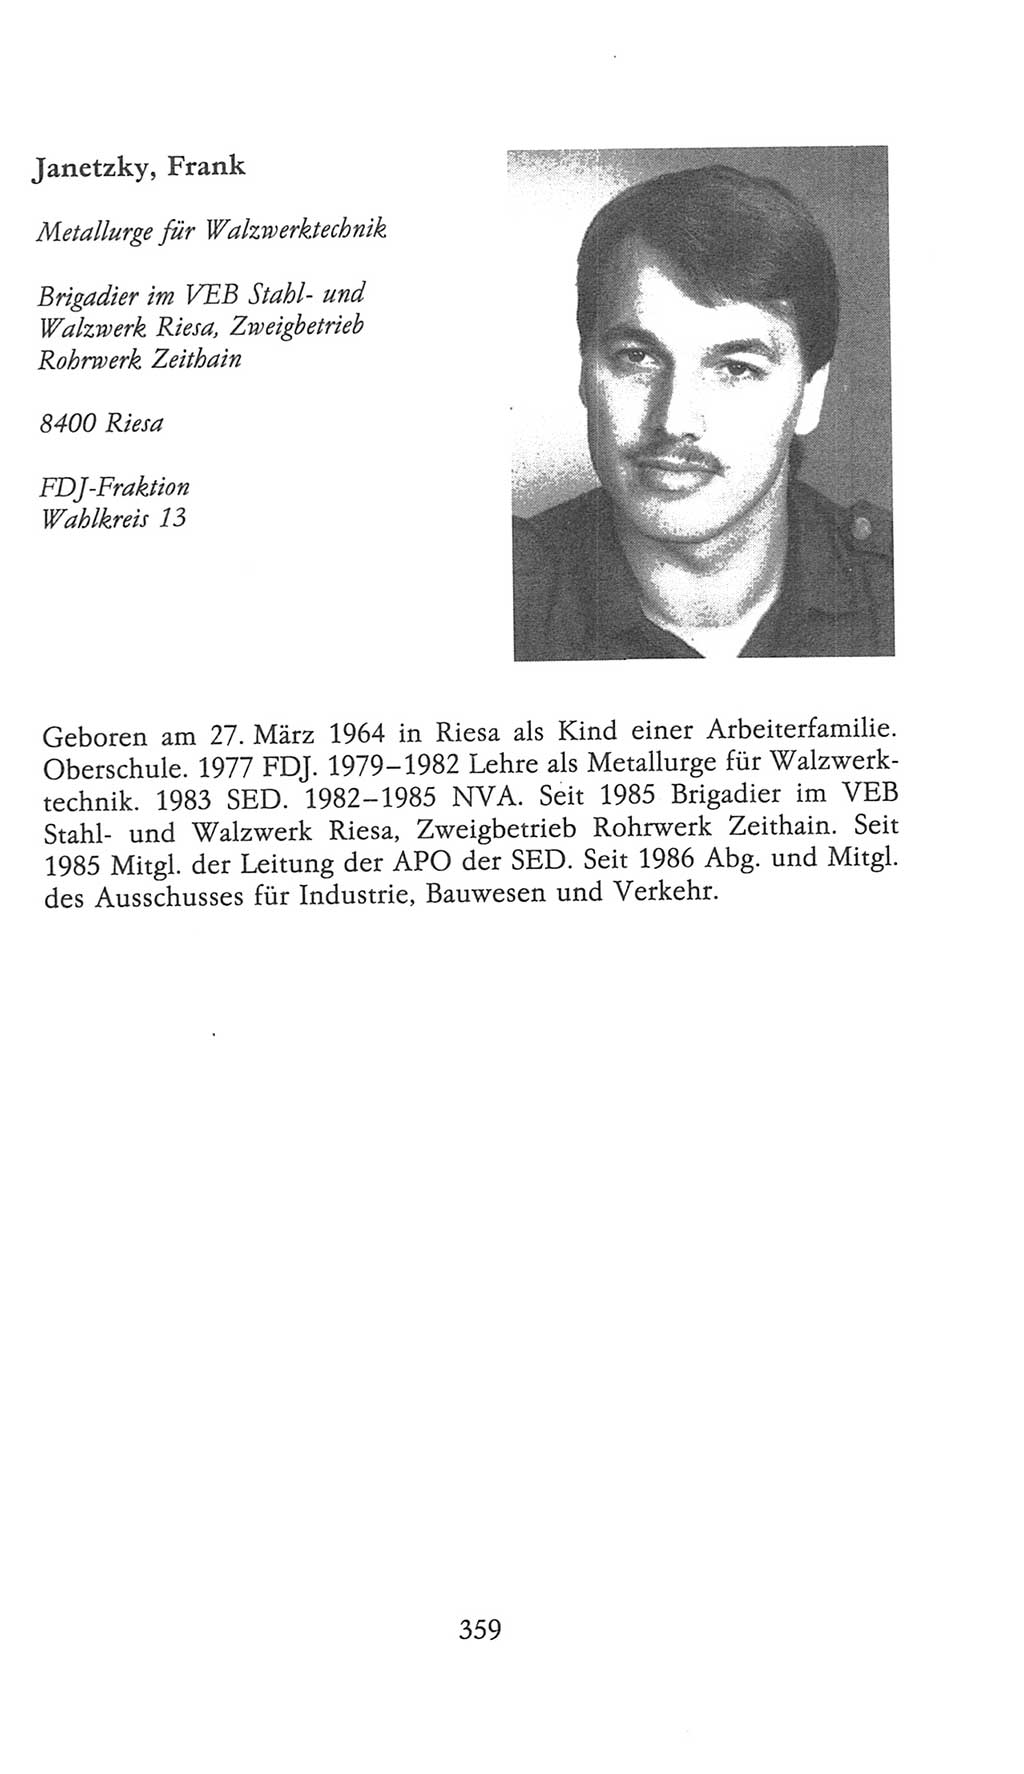 Volkskammer (VK) der Deutschen Demokratischen Republik (DDR), 9. Wahlperiode 1986-1990, Seite 359 (VK. DDR 9. WP. 1986-1990, S. 359)